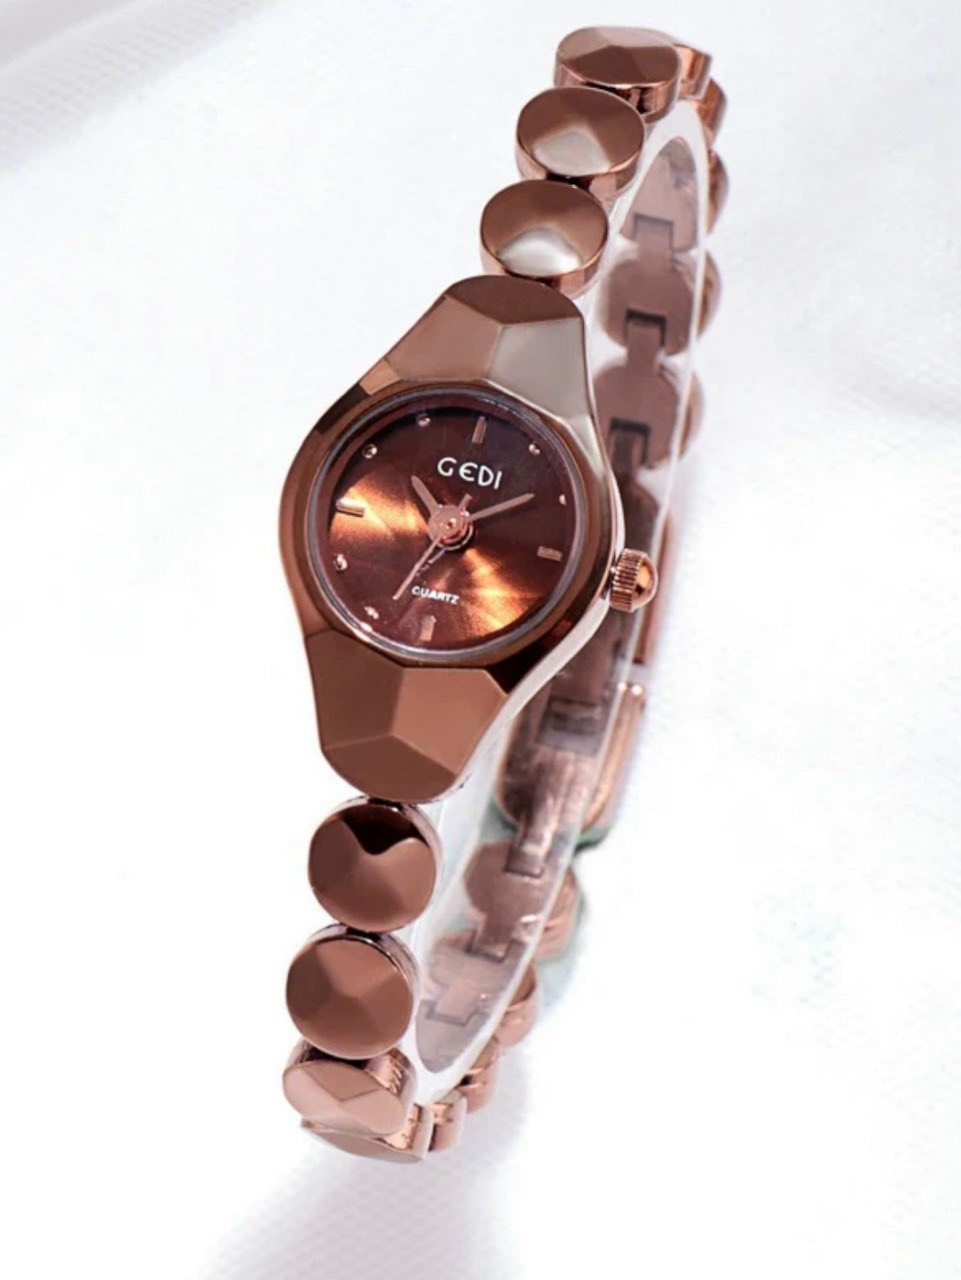 Đồng hồ nữ Gedi dây kim loại kiểu thạch anh phong cách Hàn Quốc nữ tính nhẹ nhàng